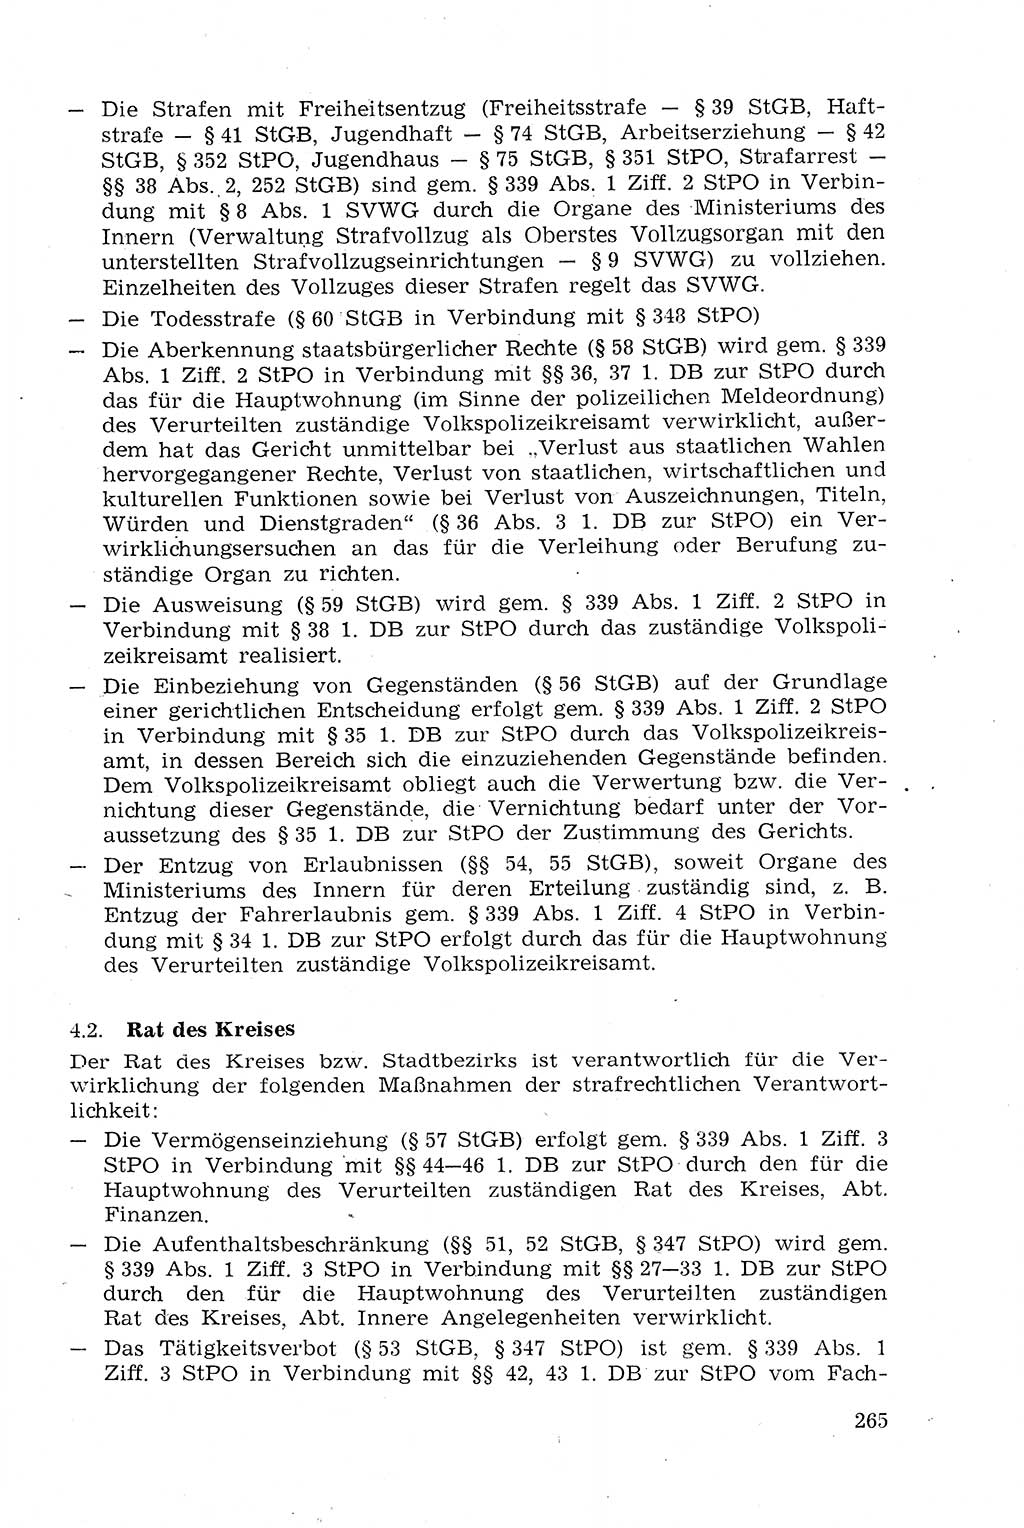 Strafprozeßrecht der DDR (Deutsche Demokratische Republik), Lehrmaterial 1969, Seite 265 (Strafprozeßr. DDR Lehrmat. 1969, S. 265)